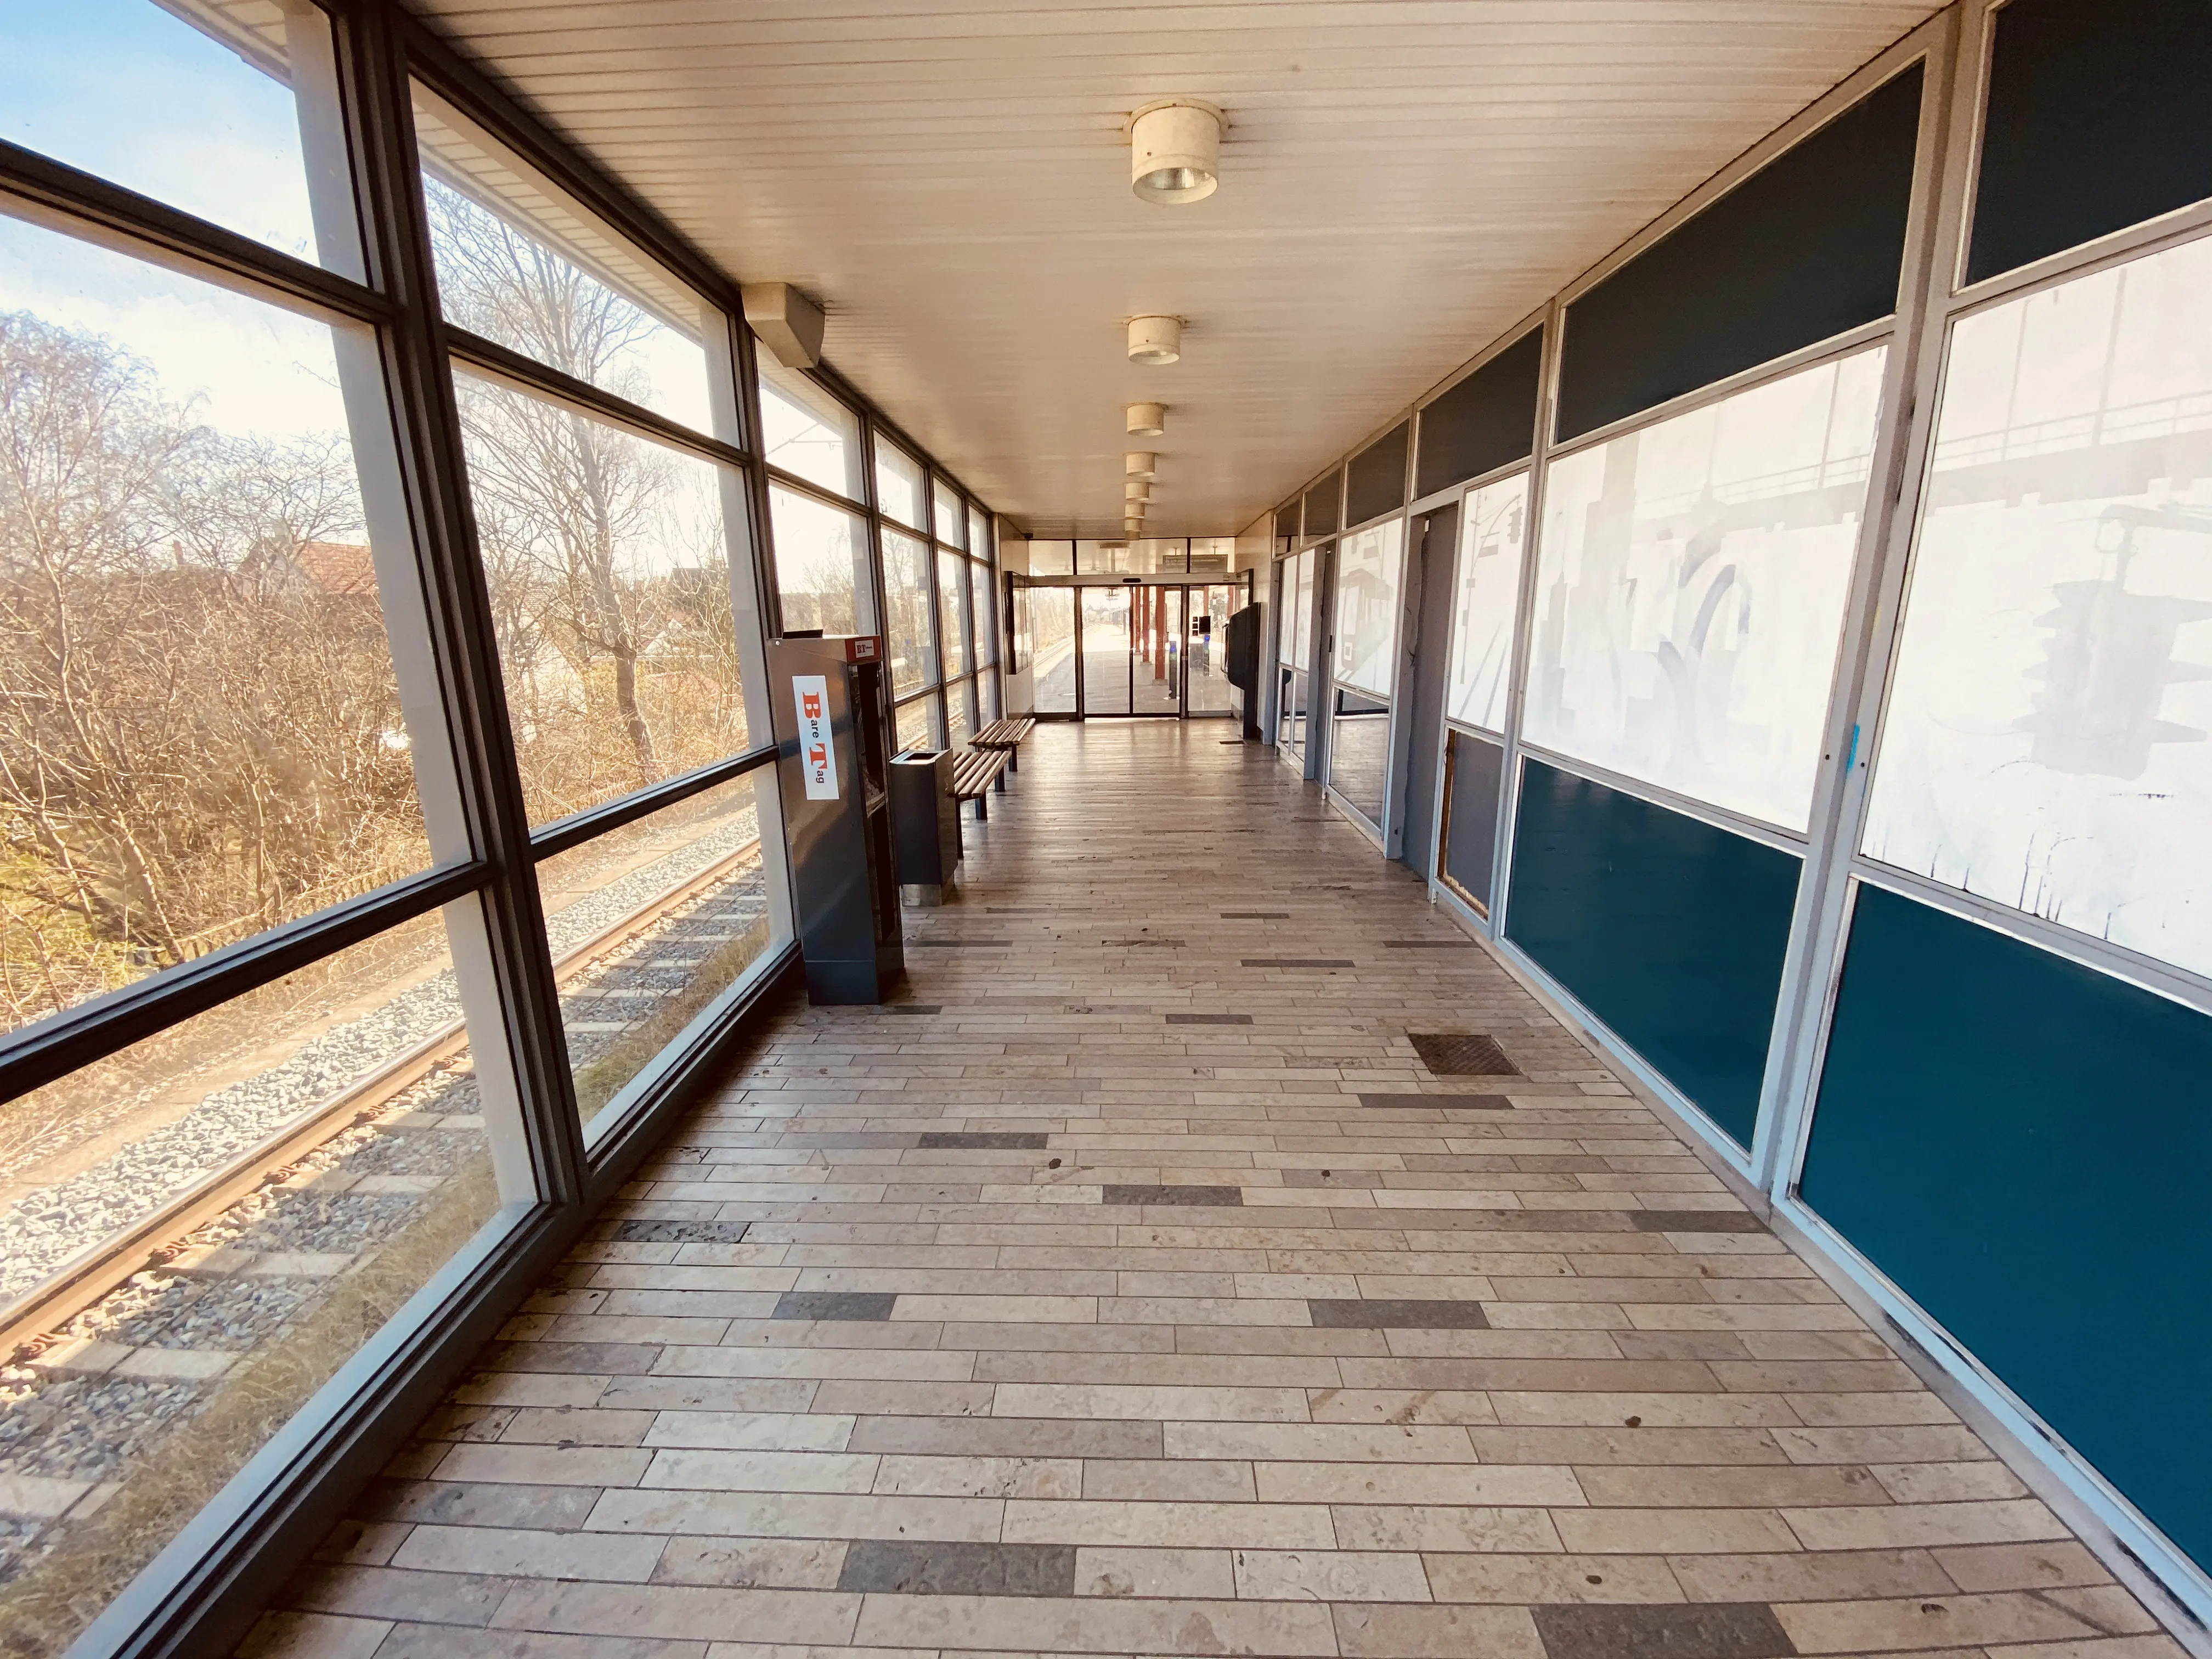 Billede af Islev S-togsstation.